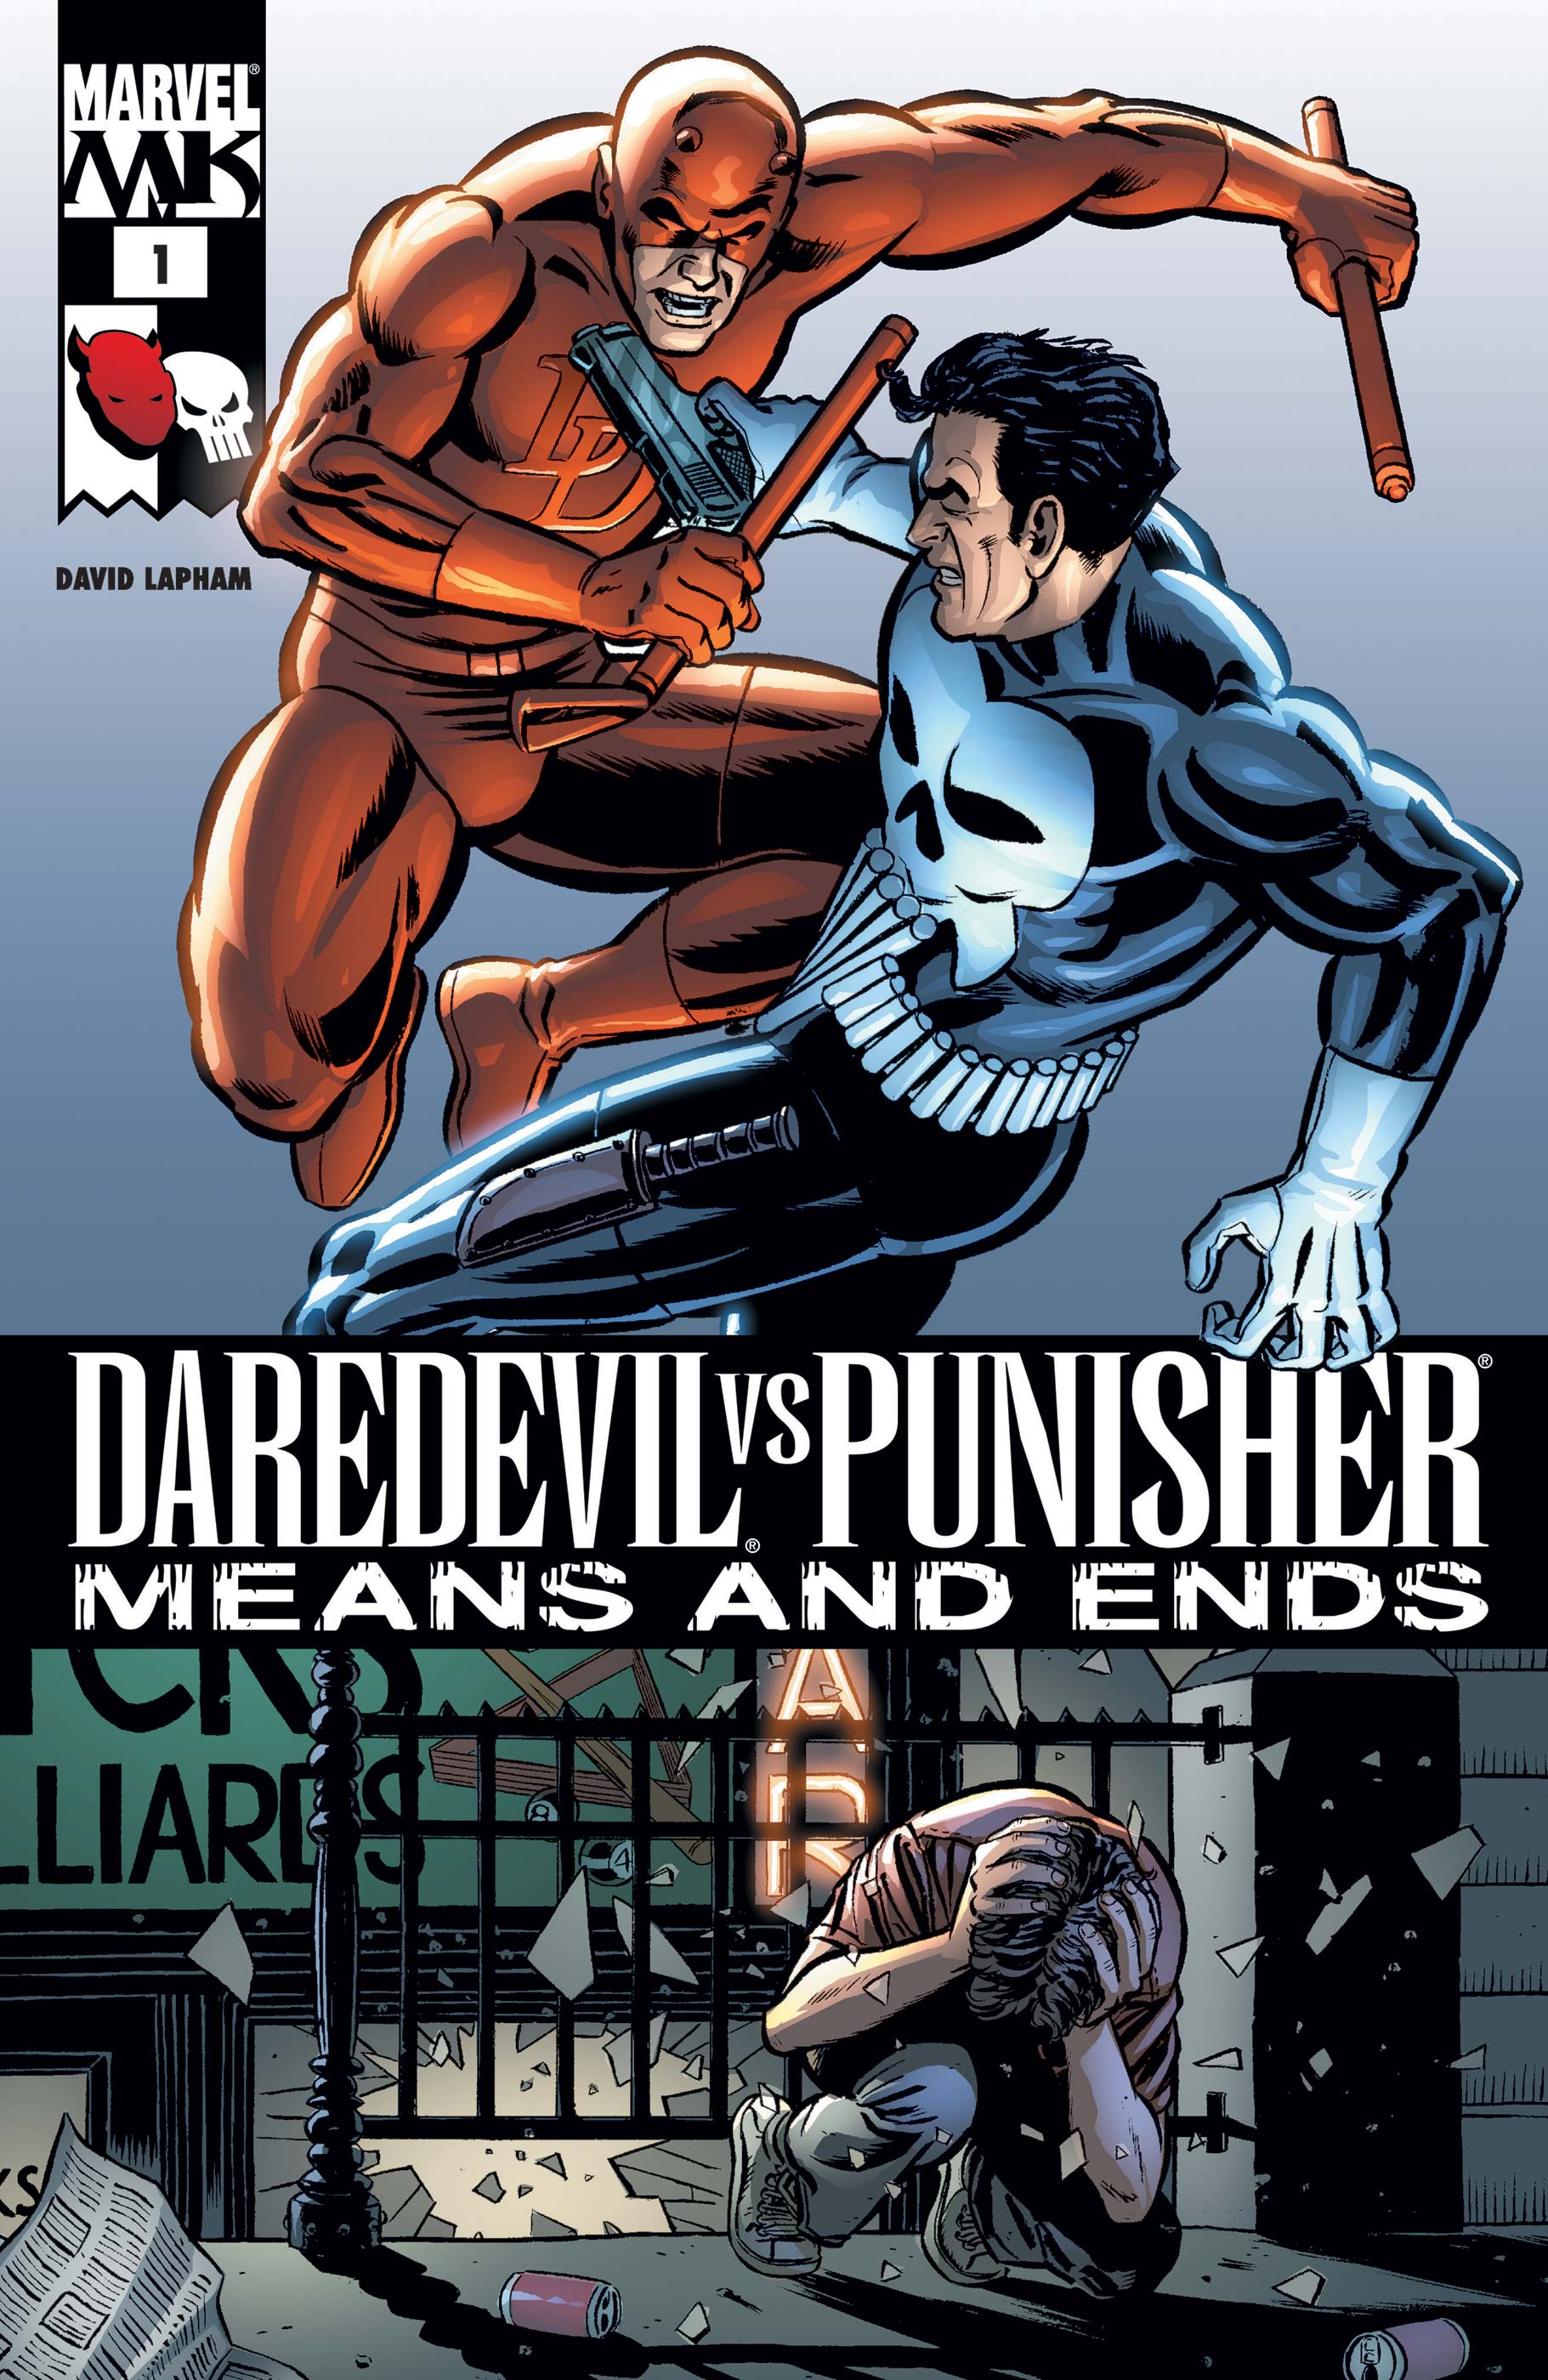 Daredevil punisher comic